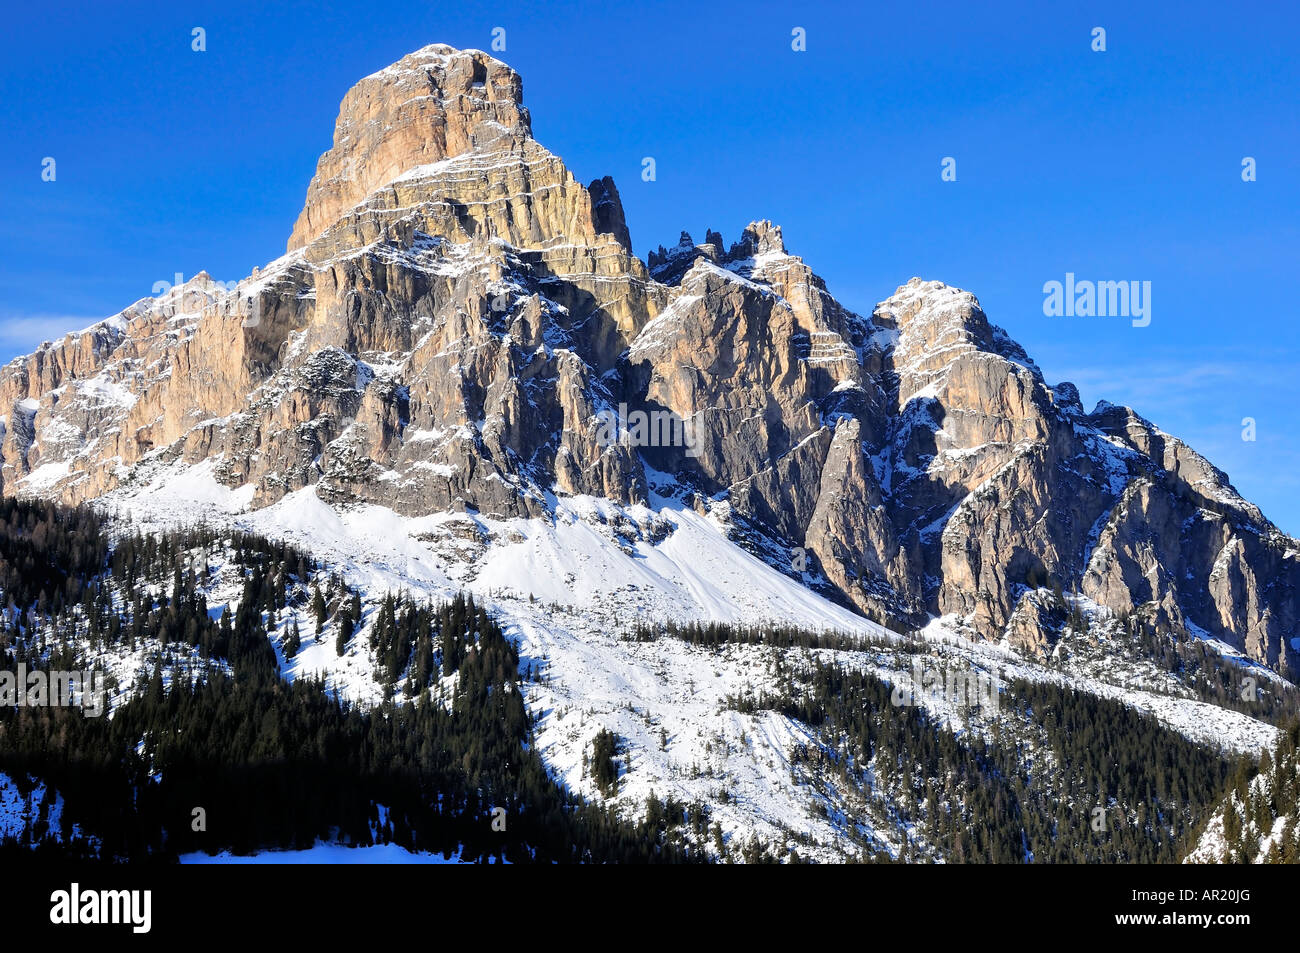 Sassongher peak, Corvara Stock Photo - Alamy